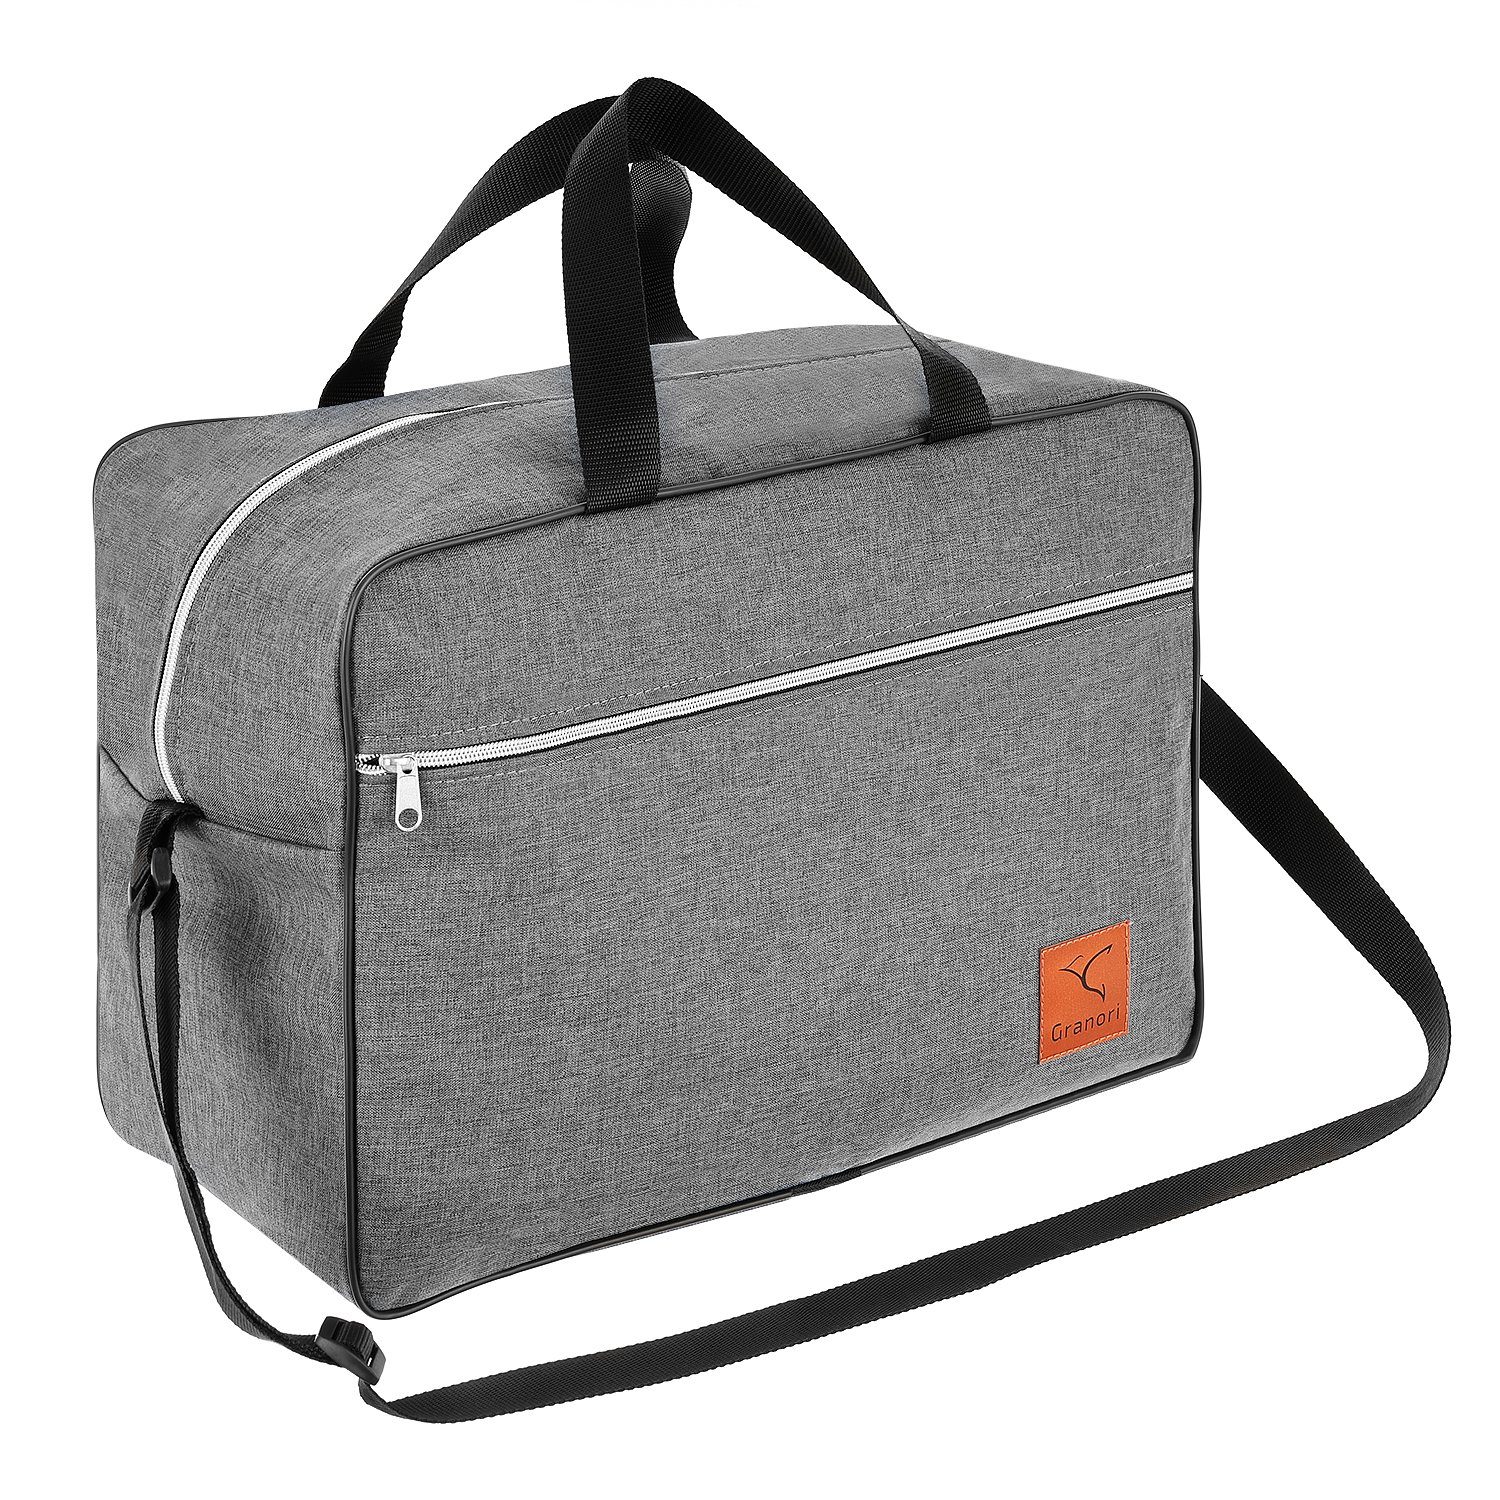 Granori Reisetasche 40x30x25 cm als Handgepäck 30 l für Flug mit z. B. Eurowings, extra leicht, mit geräumigem Hauptfach und verstellbarem Schultergurt Grau